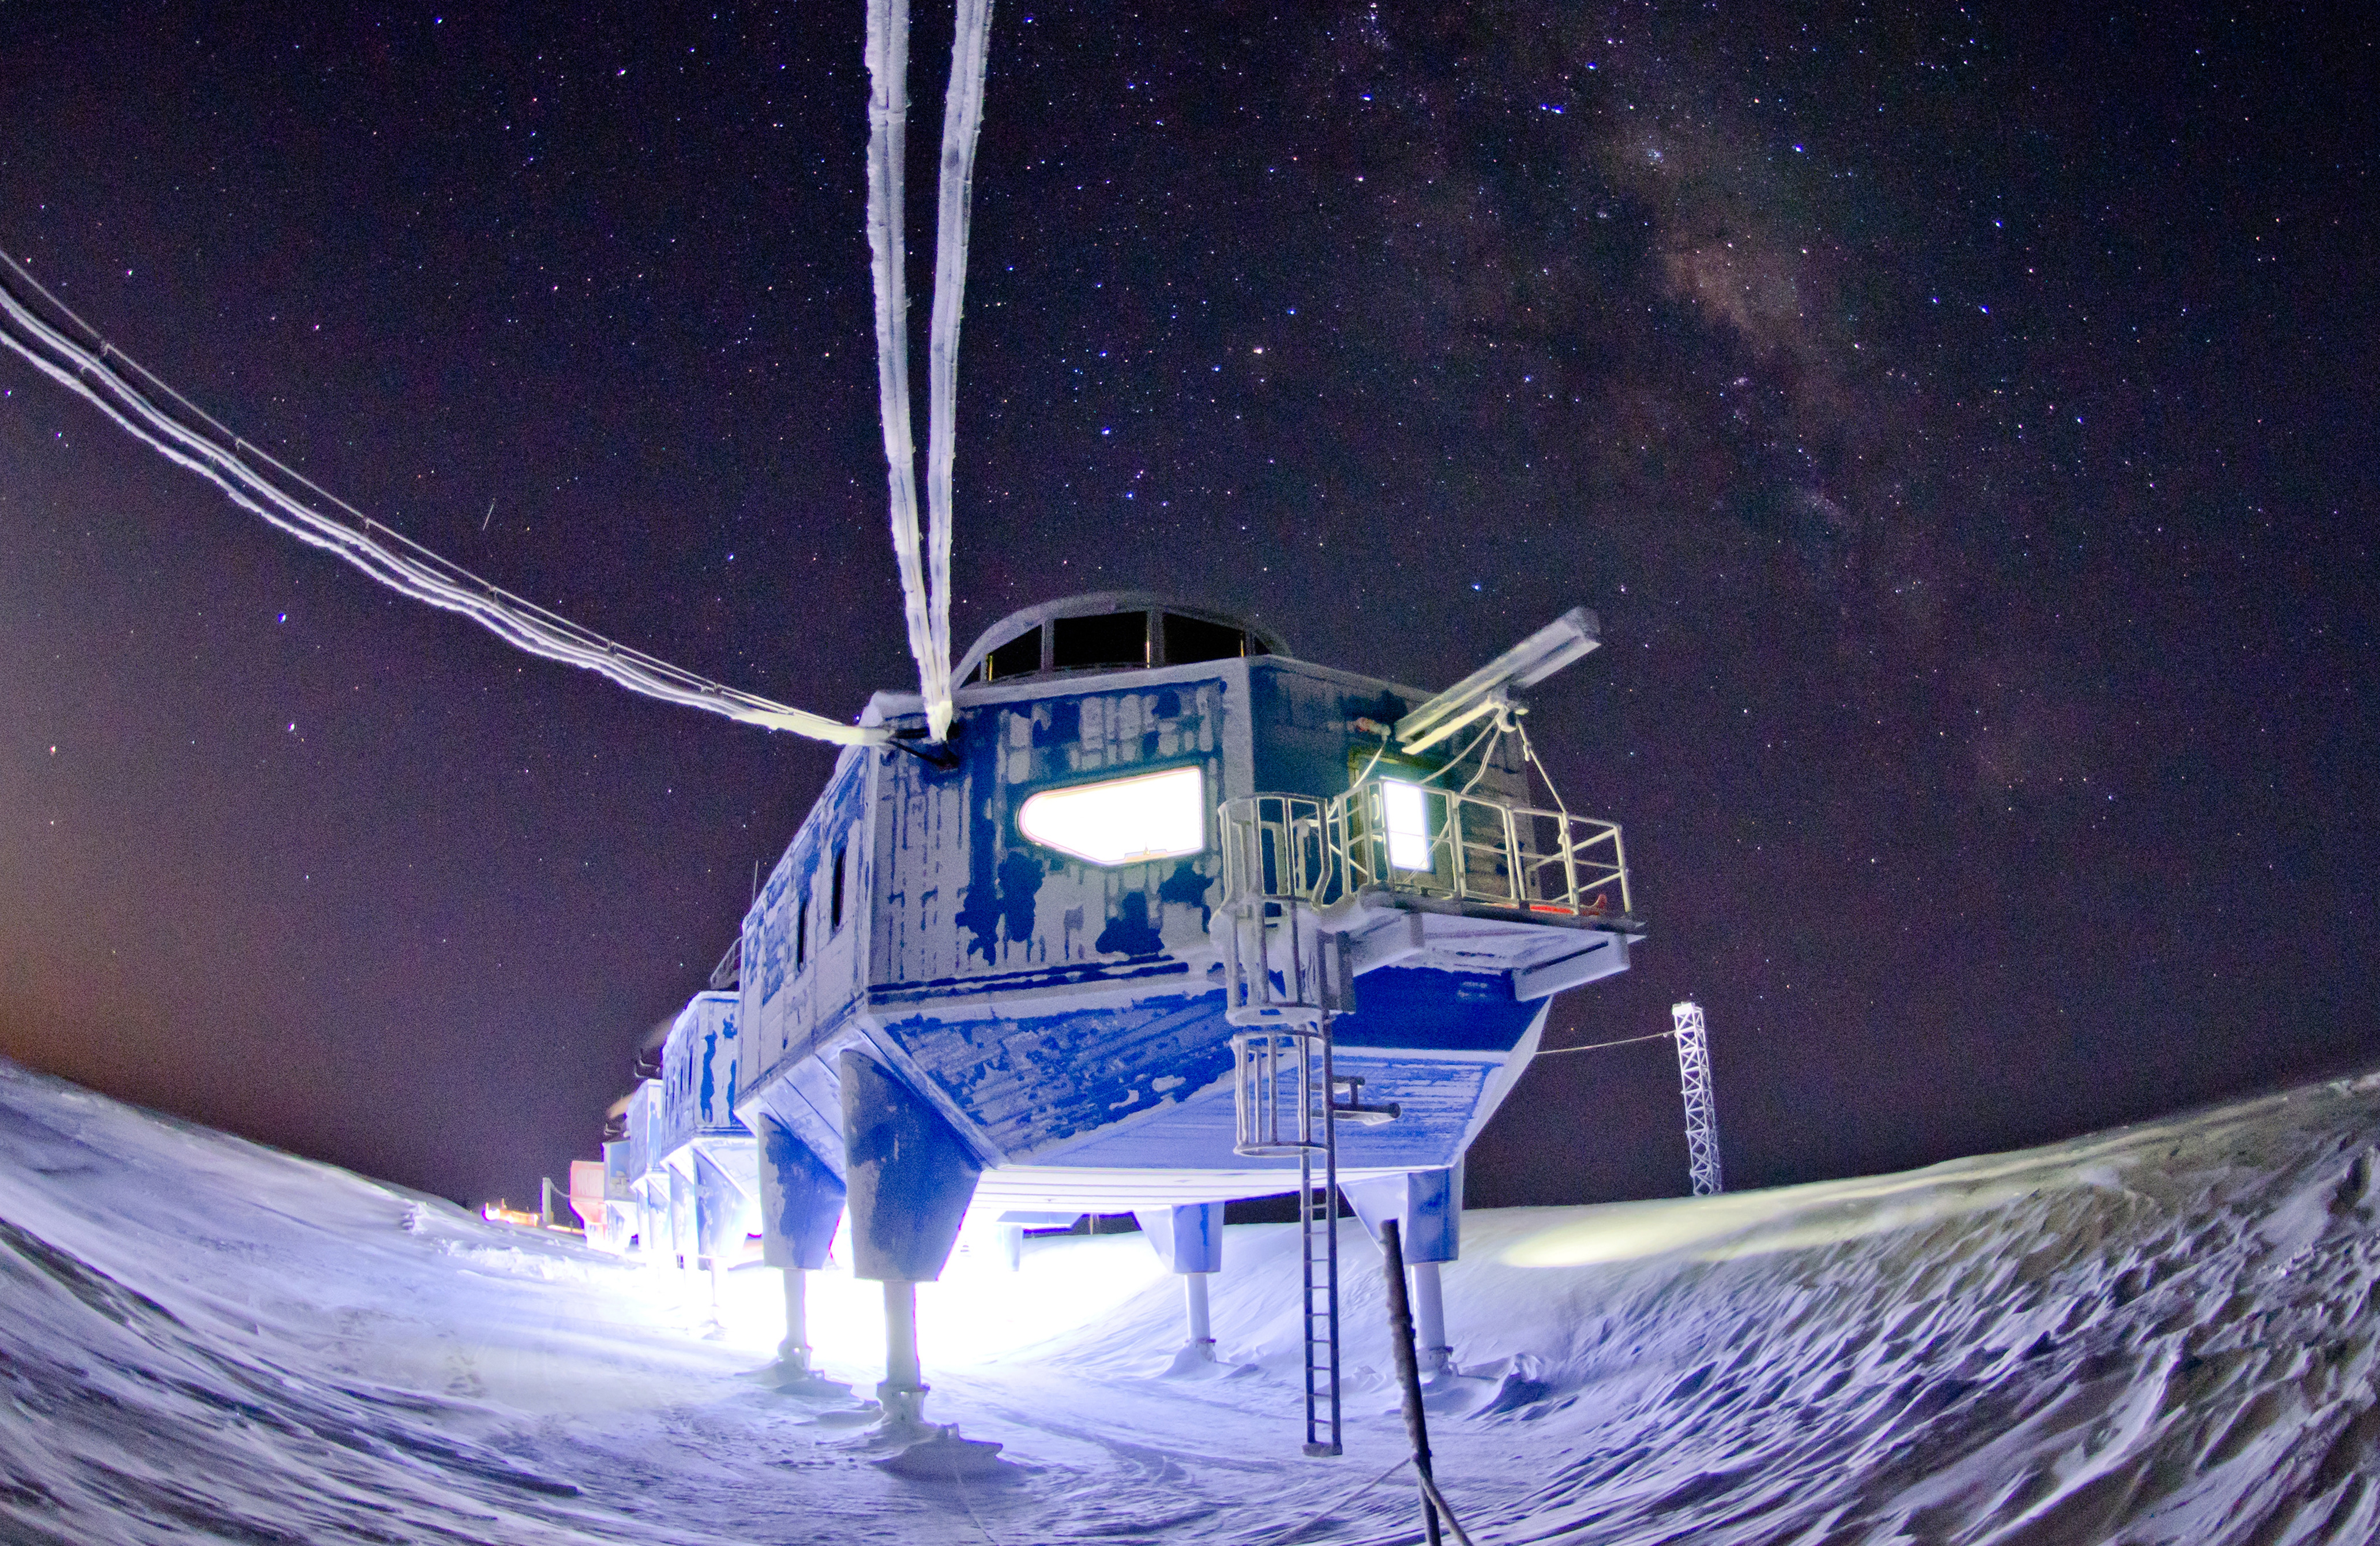 Антарктический научно исследовательский. Станция Halley vi. Арктическая станция Halley. Британская антарктическая станция Halley vi. Антарктида станция Halley.